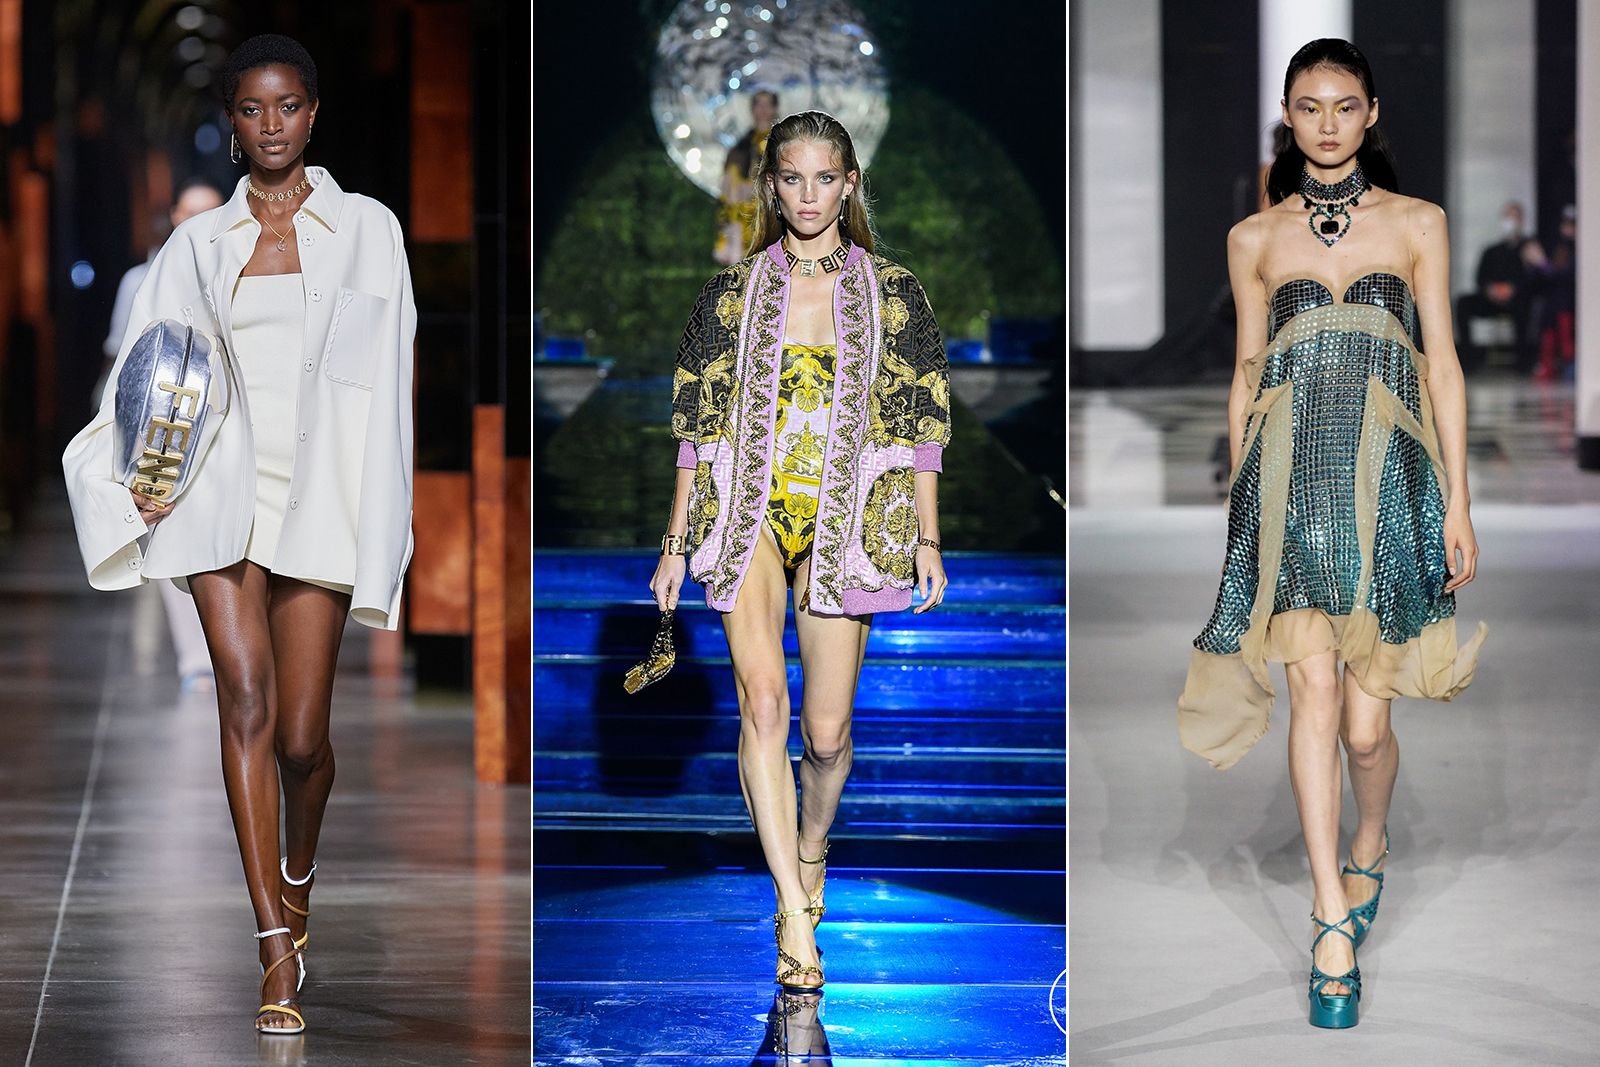 Модели в чокерах на показах (слева направо) Fendi, Versace by Fendi и Lanvin